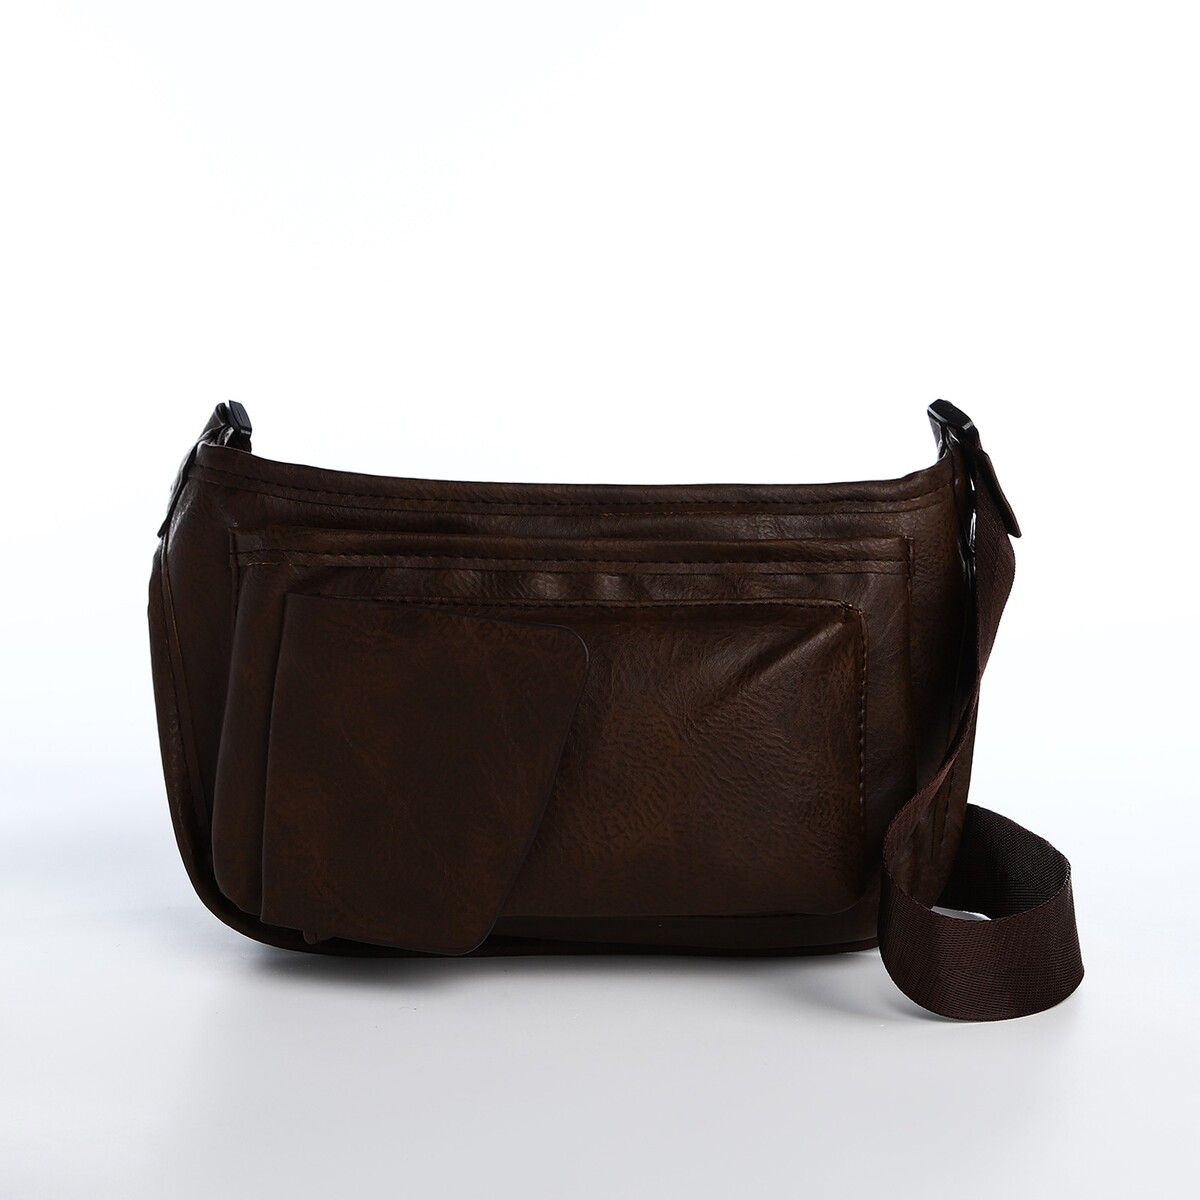 Поясная сумка на молнии, 3 наружных кармана, цвет коричневый сумка тоут на молнии 2 наружных кармана коричневый